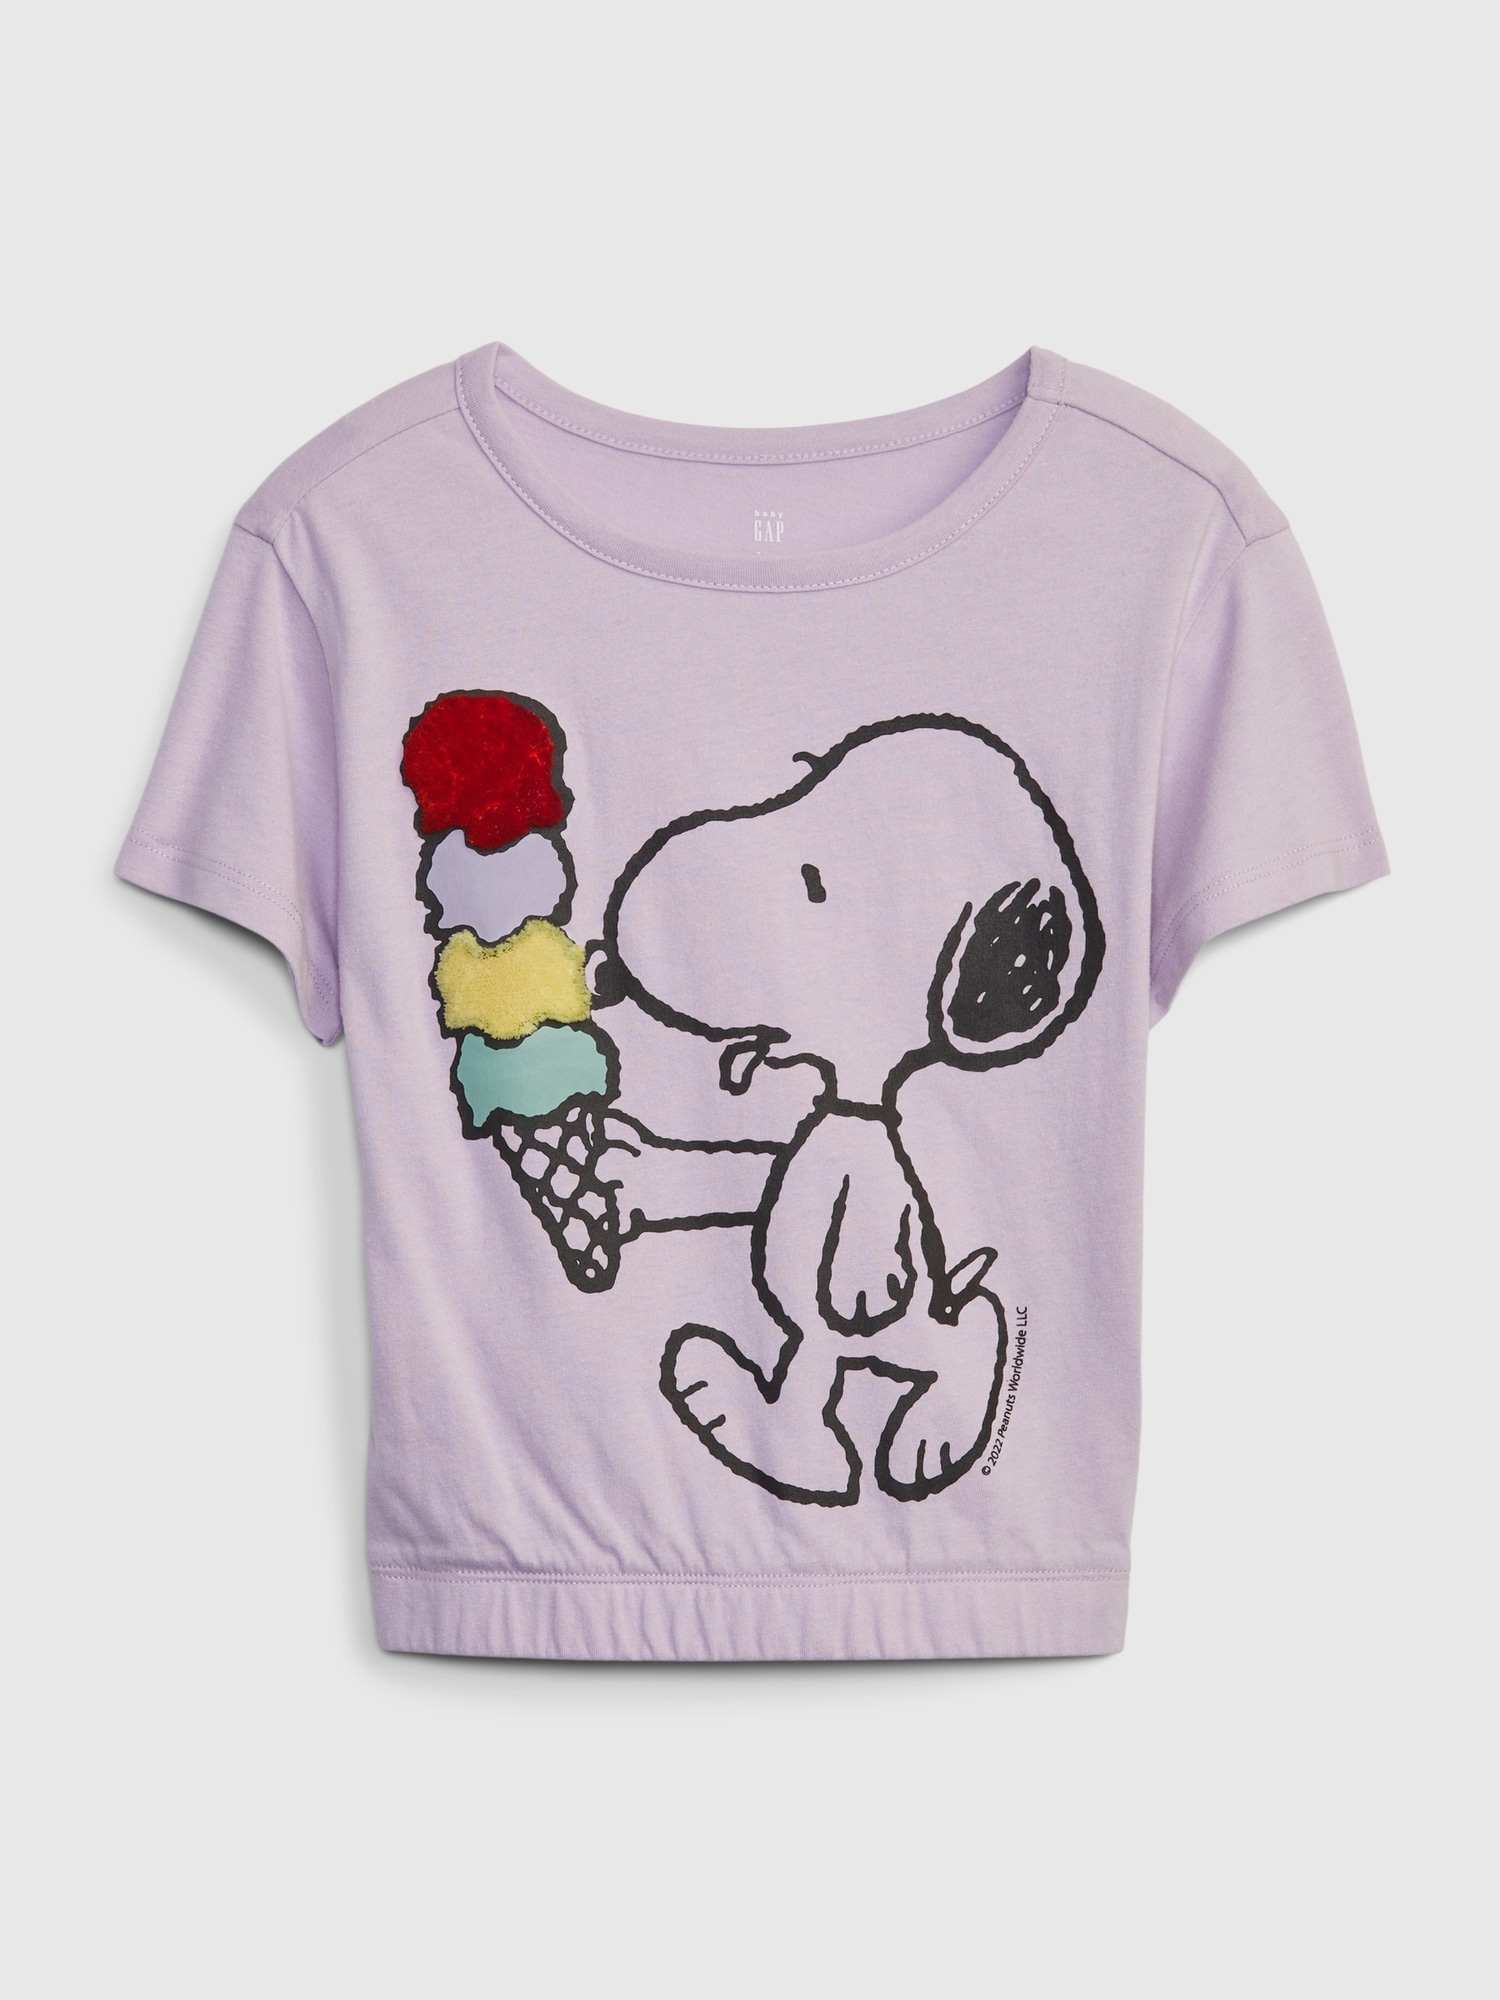 GAP Kids T-Shirt & Peanuts Snoopy - Girls